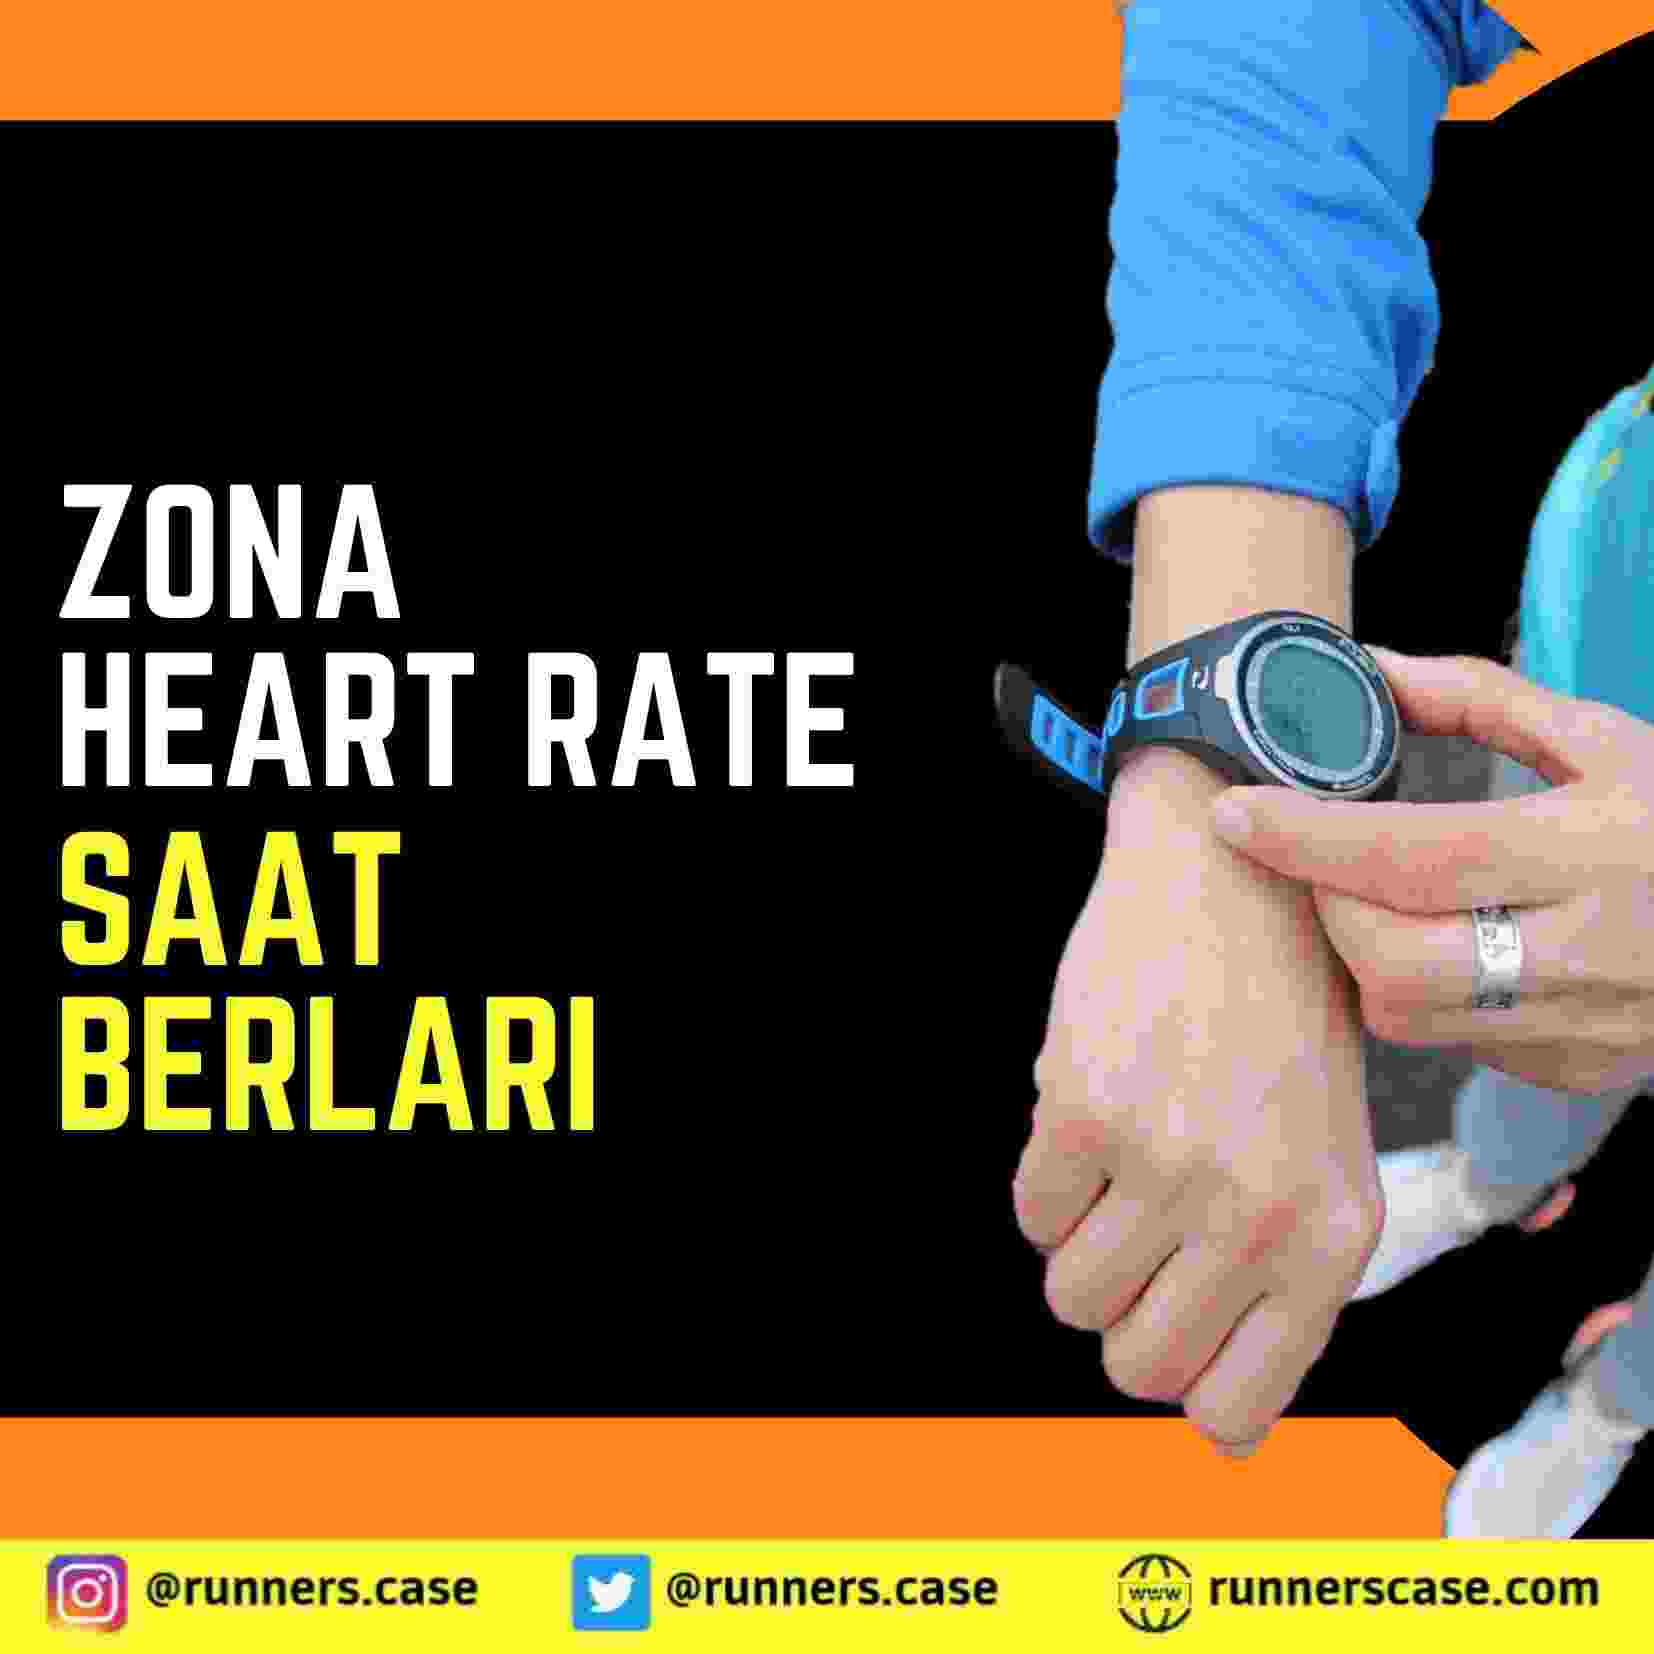 CARA MENGHITUNG ZONA Heart Rate SAAT LARI, heart rate pr bpm normal heart rate adalah pulse min heart rate normal dewasa hr bpm denyut jantung irama jantung latihan jantung zona detak jantung pada jantung contoh jantung latihan untuk jantung denyut jantung olahraga dalam jantung kecepatan jantung jantung dalam pada jantung adalah pulse jantung sensor jantung pnn50 bpm 50 bpm 75 detak jantung detak jantung saat olahraga denyut denyut jantung monitor detak jantung detak jantung olahraga denyut jantung adalah zona detak jantung pada jantung denyut jantung saat olahraga kecepatan detak jantung denyut jantung olahraga detak jantung ketika olahraga kecepatan denyut jantung jantung pada monitor denyut jantung kecepatan jantung kinerja jantung detak jantung saat bersepeda dalam jantung jantung kita detak jantung saat berolahraga detak jantung di monitor jantung dalam pada jantung adalah detak jantung monitor bpm 65 bpm 40 higher pulse bpm 77 pr bpm normal adalah sdann berapa heart rate normal bpm 64 hr bpm adalah normal heart rate adalah sport heart pulse normal adalah hitung heart rate ukuran heart rate normal satuan heart rate menurunkan heart rate cardiovascular pulse rate adalah berapa normal heart rate heartbeat normal berapa perbedaan heart rate dan nadi bpm heart rate adalah heart rate normal lansia delta rr heart rate rate normal jantung heart rate dibawah 60 perbedaan nadi dan heart rate batas heart rate normal heart rate atlet cara meningkatkan heart rate normalnya heart rate heart rate jantung normal heart rate yang normal berapa pr bpm yang normal detak jantung normal denyut nadi normal denyut jantung normal detak jantung normal per menit cara menghitung denyut nadi normal detak jantung detak jantung tidak normal tekanan jantung normal denyut nadi normal per menit detak nadi normal tekanan nadi normal menghitung denyut nadi cara menghitung detak jantung detak jantung normal bpm bpm jantung normal irama jantung normal jantung normal cara mengukur denyut nadi detak jantung normal detak jantung per menit detak jantung yang normal normal denyut jantung jantung sehat detak jantung per menit denyut jantung kesehatan jantung normal jantung nadi normal adalah denyut nadi normal adalah irama jantung denyut nadi yang normal rata rata detak jantung normal mengukur denyut nadi cara menghitung denyut jantung denyut nadi tidak normal cara menghitung detak jantung normal cara cek jantung sehat detak jantung yg normal rata rata denyut nadi normal pulse jantung normal denyut jantung normal per menit angka detak jantung normal cara menghitung denyut nadi normal cara cek denyut nadi detak normal jantung normalnya denyut nadi normal bpm jantung nadi normal per menit menghitung detak jantung bpm normal jantung cara cek jantung sehat atau tidak cara menghitung denyut nadi adalah angka normal denyut jantung denyut jantung adalah denyut normal normal nya detak jantung cara mengukur denyut jantung jantung yang normal detak jantung per menit normal cek jantung sehat cara jantung sehat menghitung detak jantung normal detak jantung sehat cek nadi normal jantung tidak normal denyut jantung tidak normal detak jantung 110 per menit denyut jantung yang normal cek jantung normal normal detak nadi denyut nadi dan denyut jantung cek detak jantung normal detak denyut nadi normal cara cek jantung normal normal tekanan jantung cara menghitung detak nadi mengukur detak jantung normal detak jantung kencang tekanan detak jantung normal irama jantung tidak normal detak jantung bpm bpm detak jantung normal pulse normal per menit nadi tidak normal detak jantung 110 angka denyut nadi normal tekanan jantung yang normal denyut jantung dan denyut nadi denyut jantung per menit denyut normal jantung denyut nadi per menit normal detak jantung bpm normal tekanan denyut nadi normal normal irama jantung detak jantung yang sehat menghitung denyut jantung detak jantung normal adalah denyut nadi jantung normal jantung pada denyut jantung yg normal